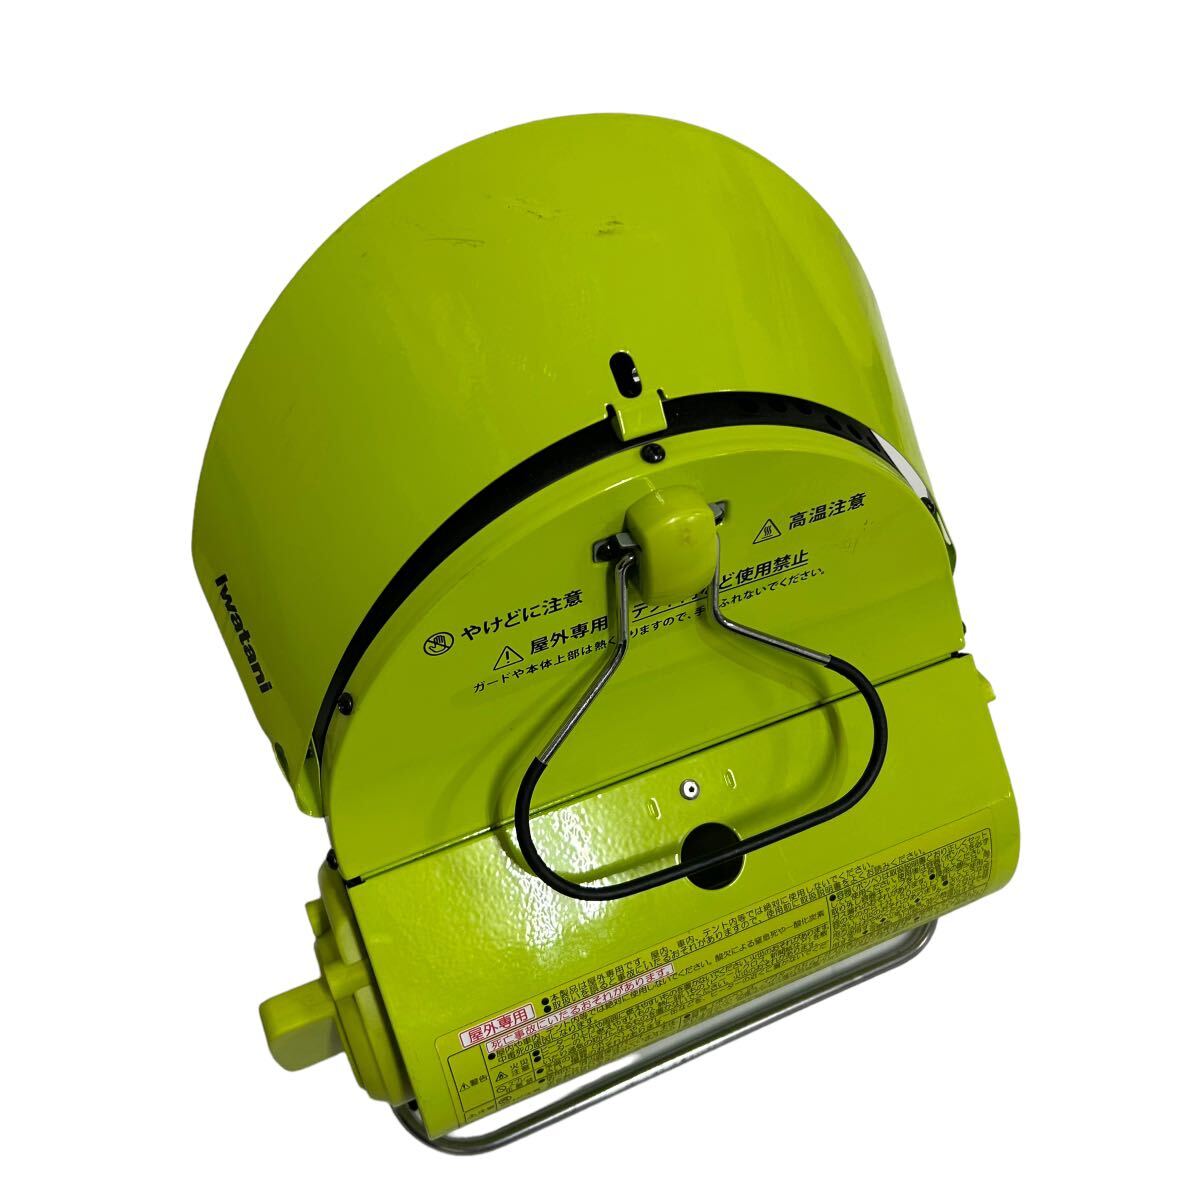  Iwatani Iwatani газ в баллончике обогреватель CB-0DH-1 уличный кемпинг зеленый снят с производства рабочий товар защищающий от холода наружный специальный 